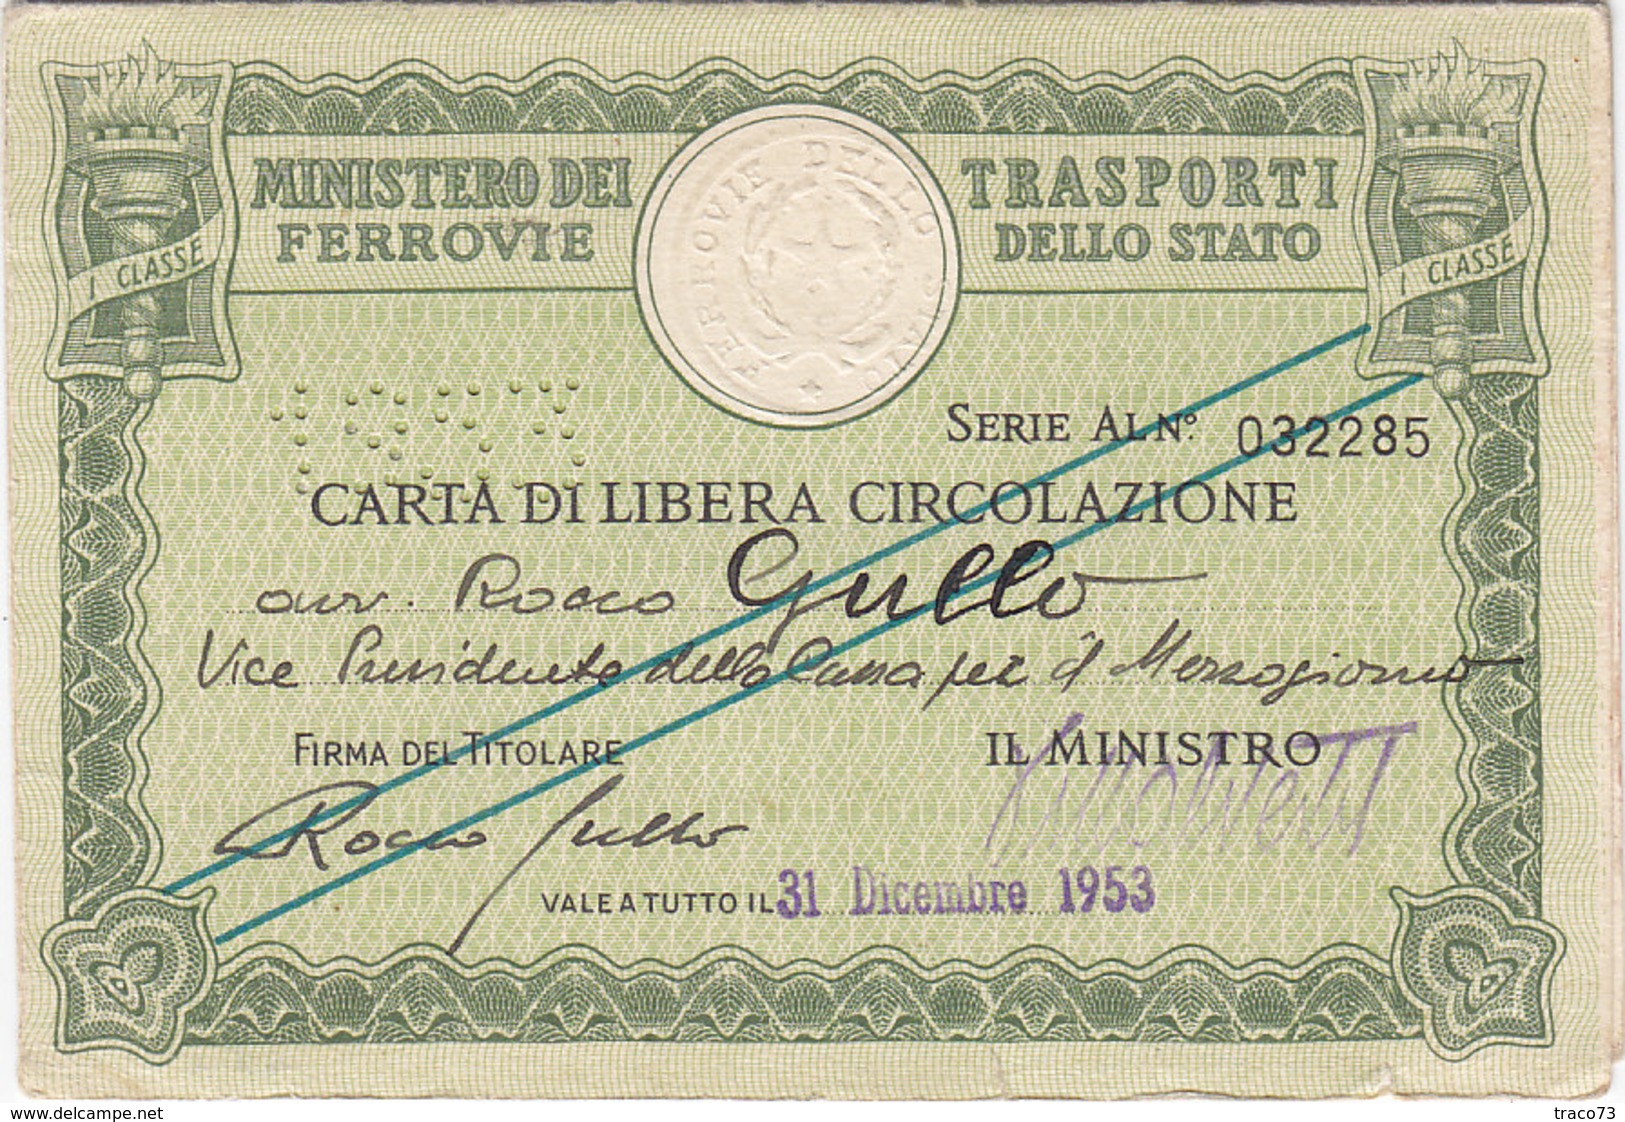 FERROVIE DELLO STATO / CARTA DI LIBERA CIRCOLAZIONE _ PERFIN 1953 - Europa